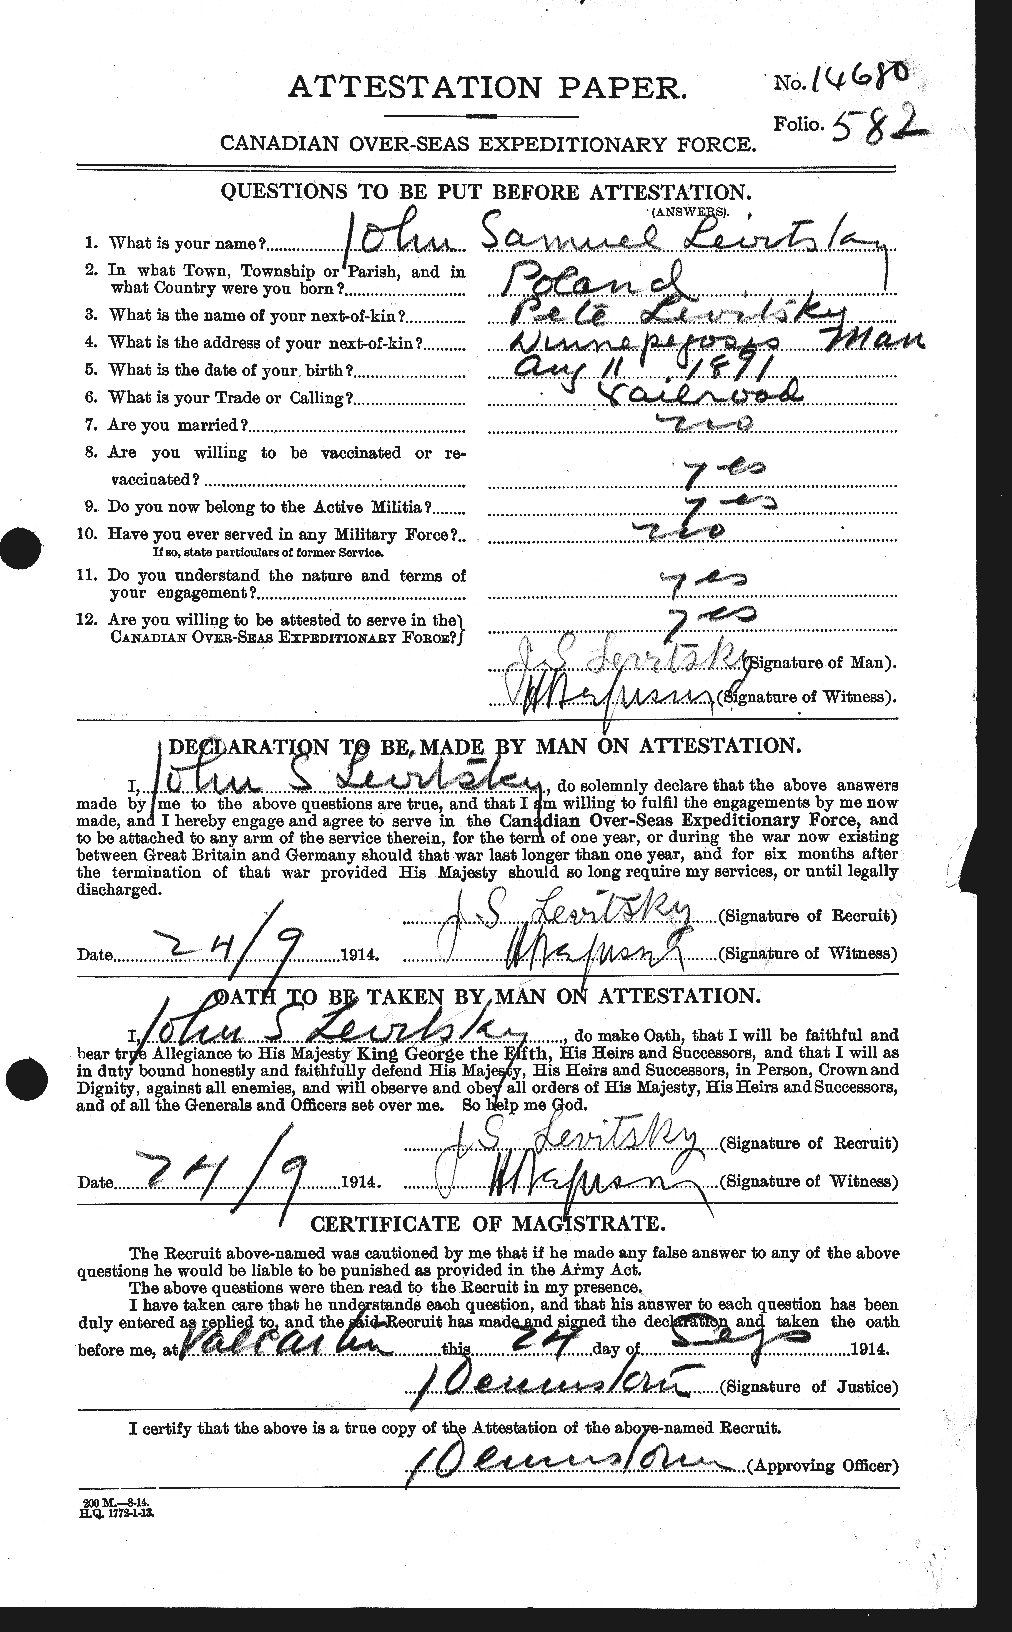 Dossiers du Personnel de la Première Guerre mondiale - CEC 462754a